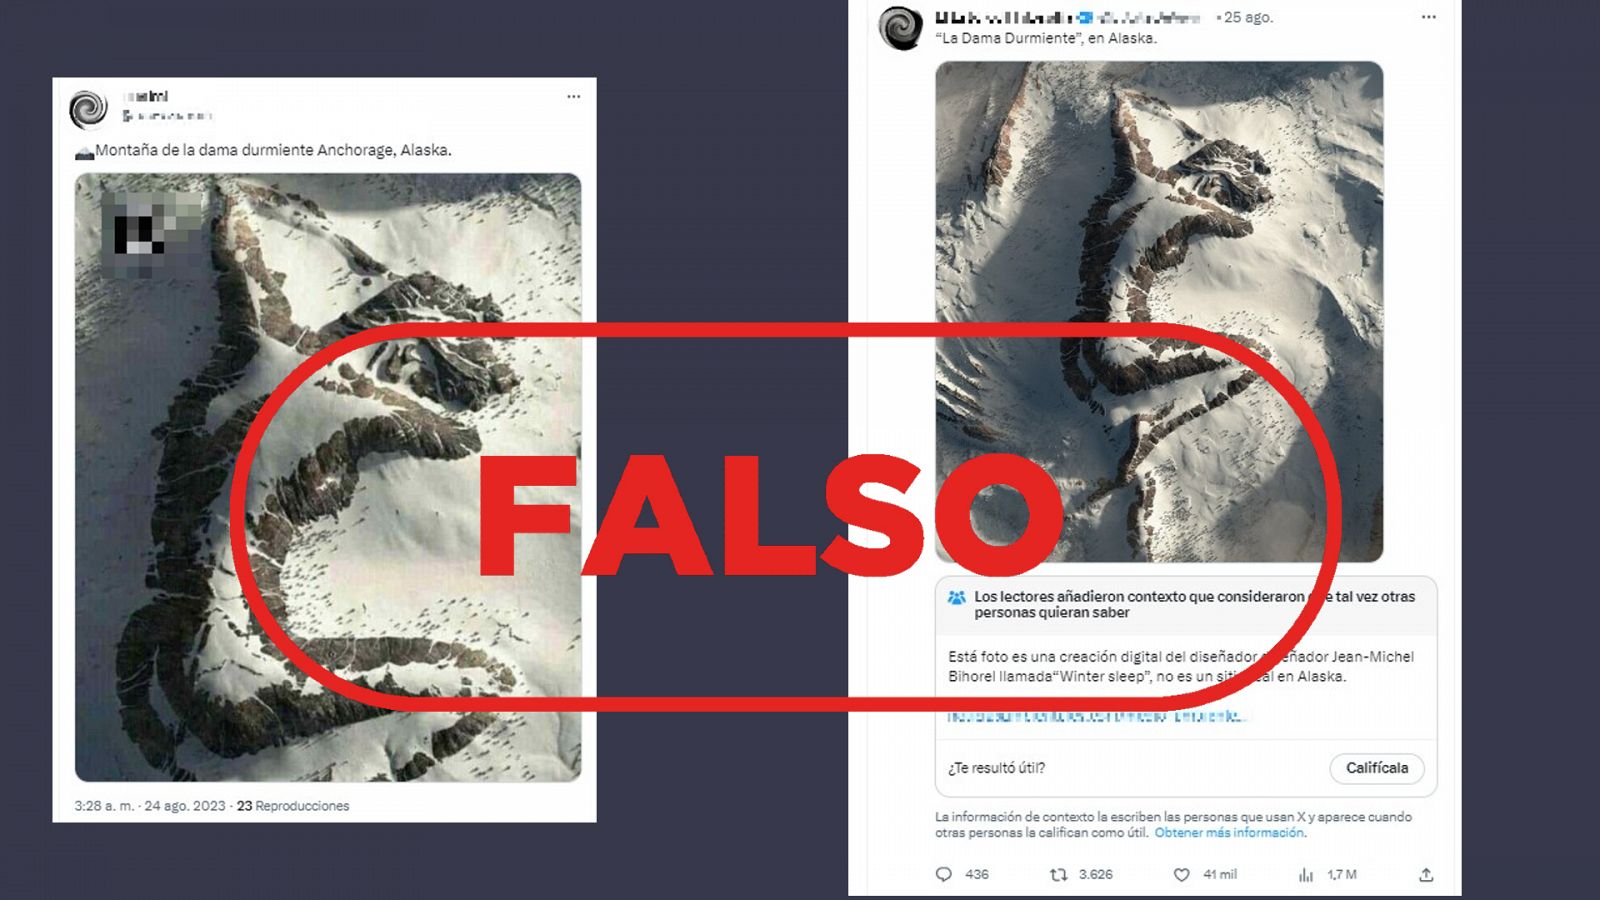 Mensajes que difunden la falsa idea de que la imagen de una montaña nevada con una silueta de mujer es real, con el sello FALSO en rojo.